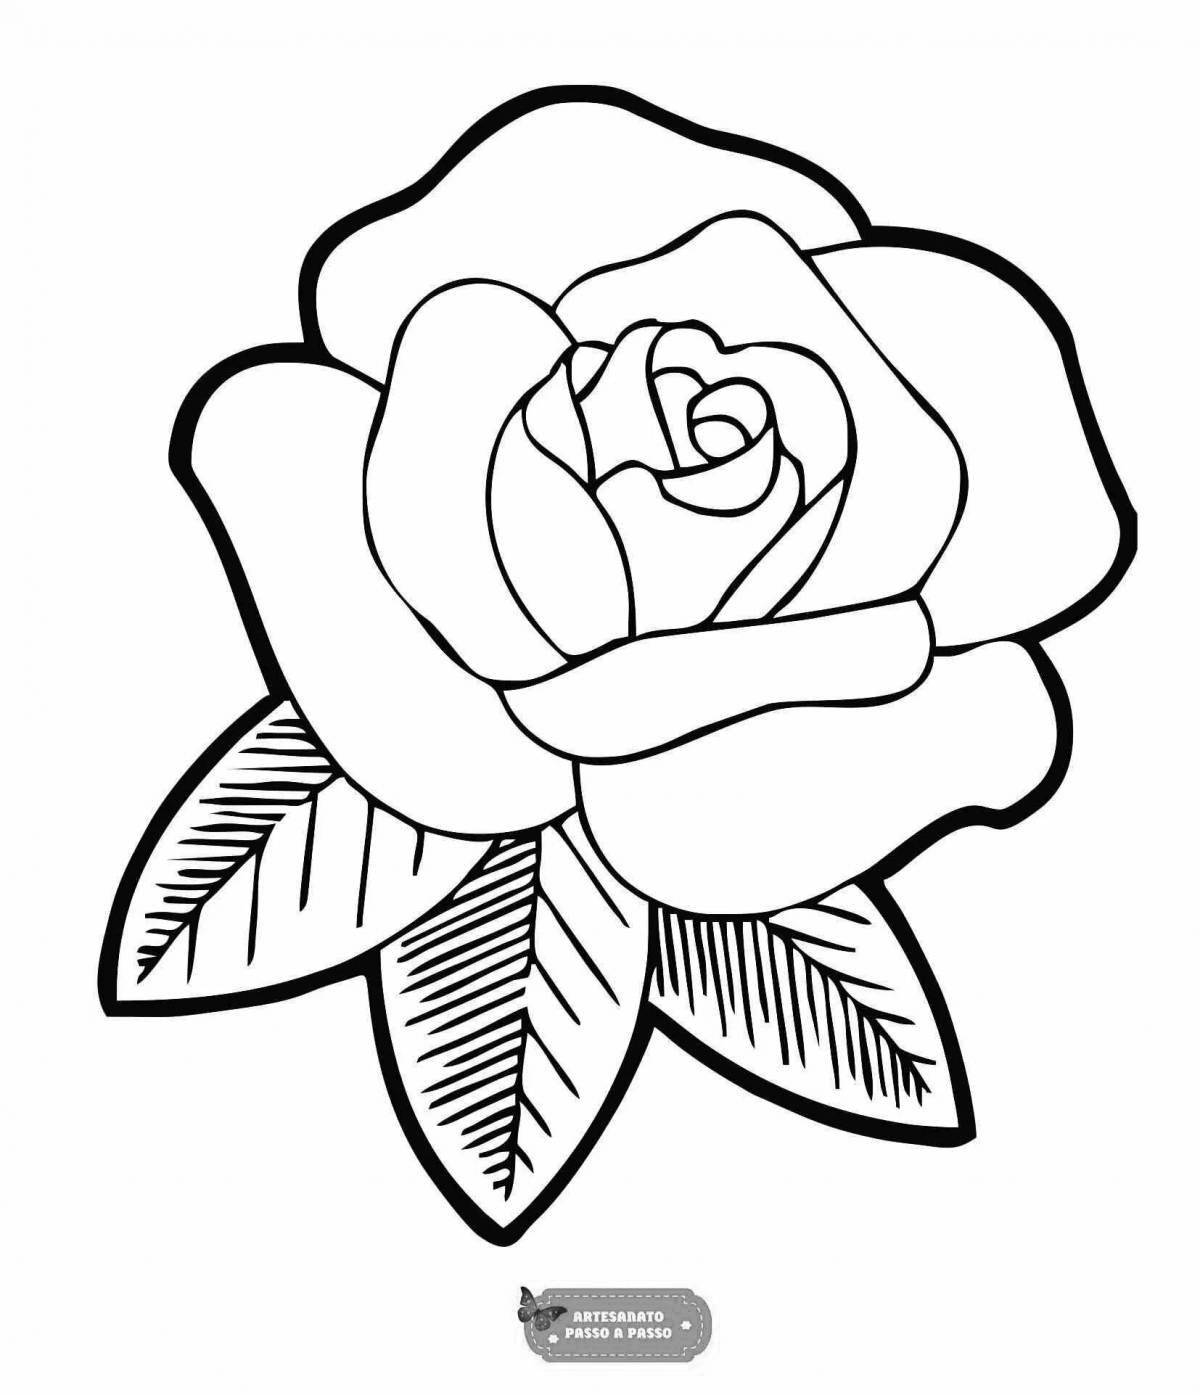 Grand rose coloring